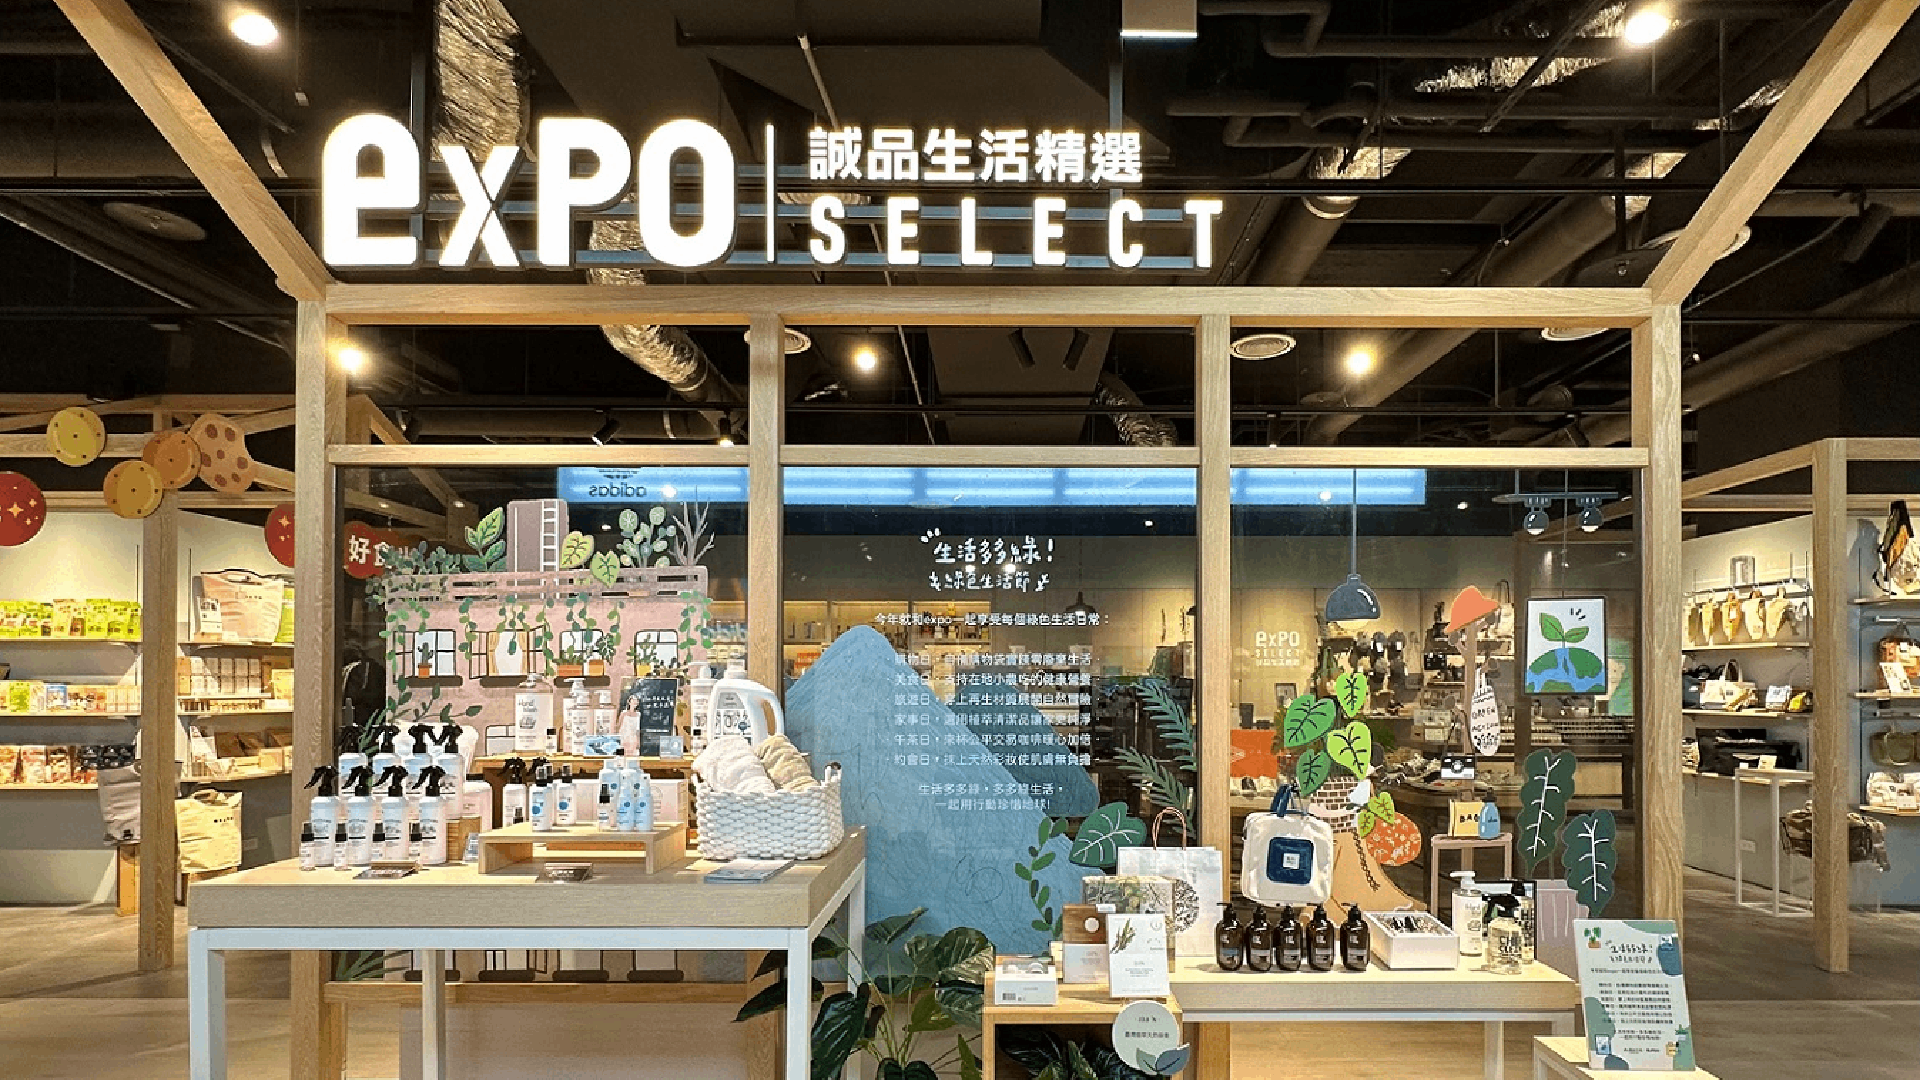 Expo-select